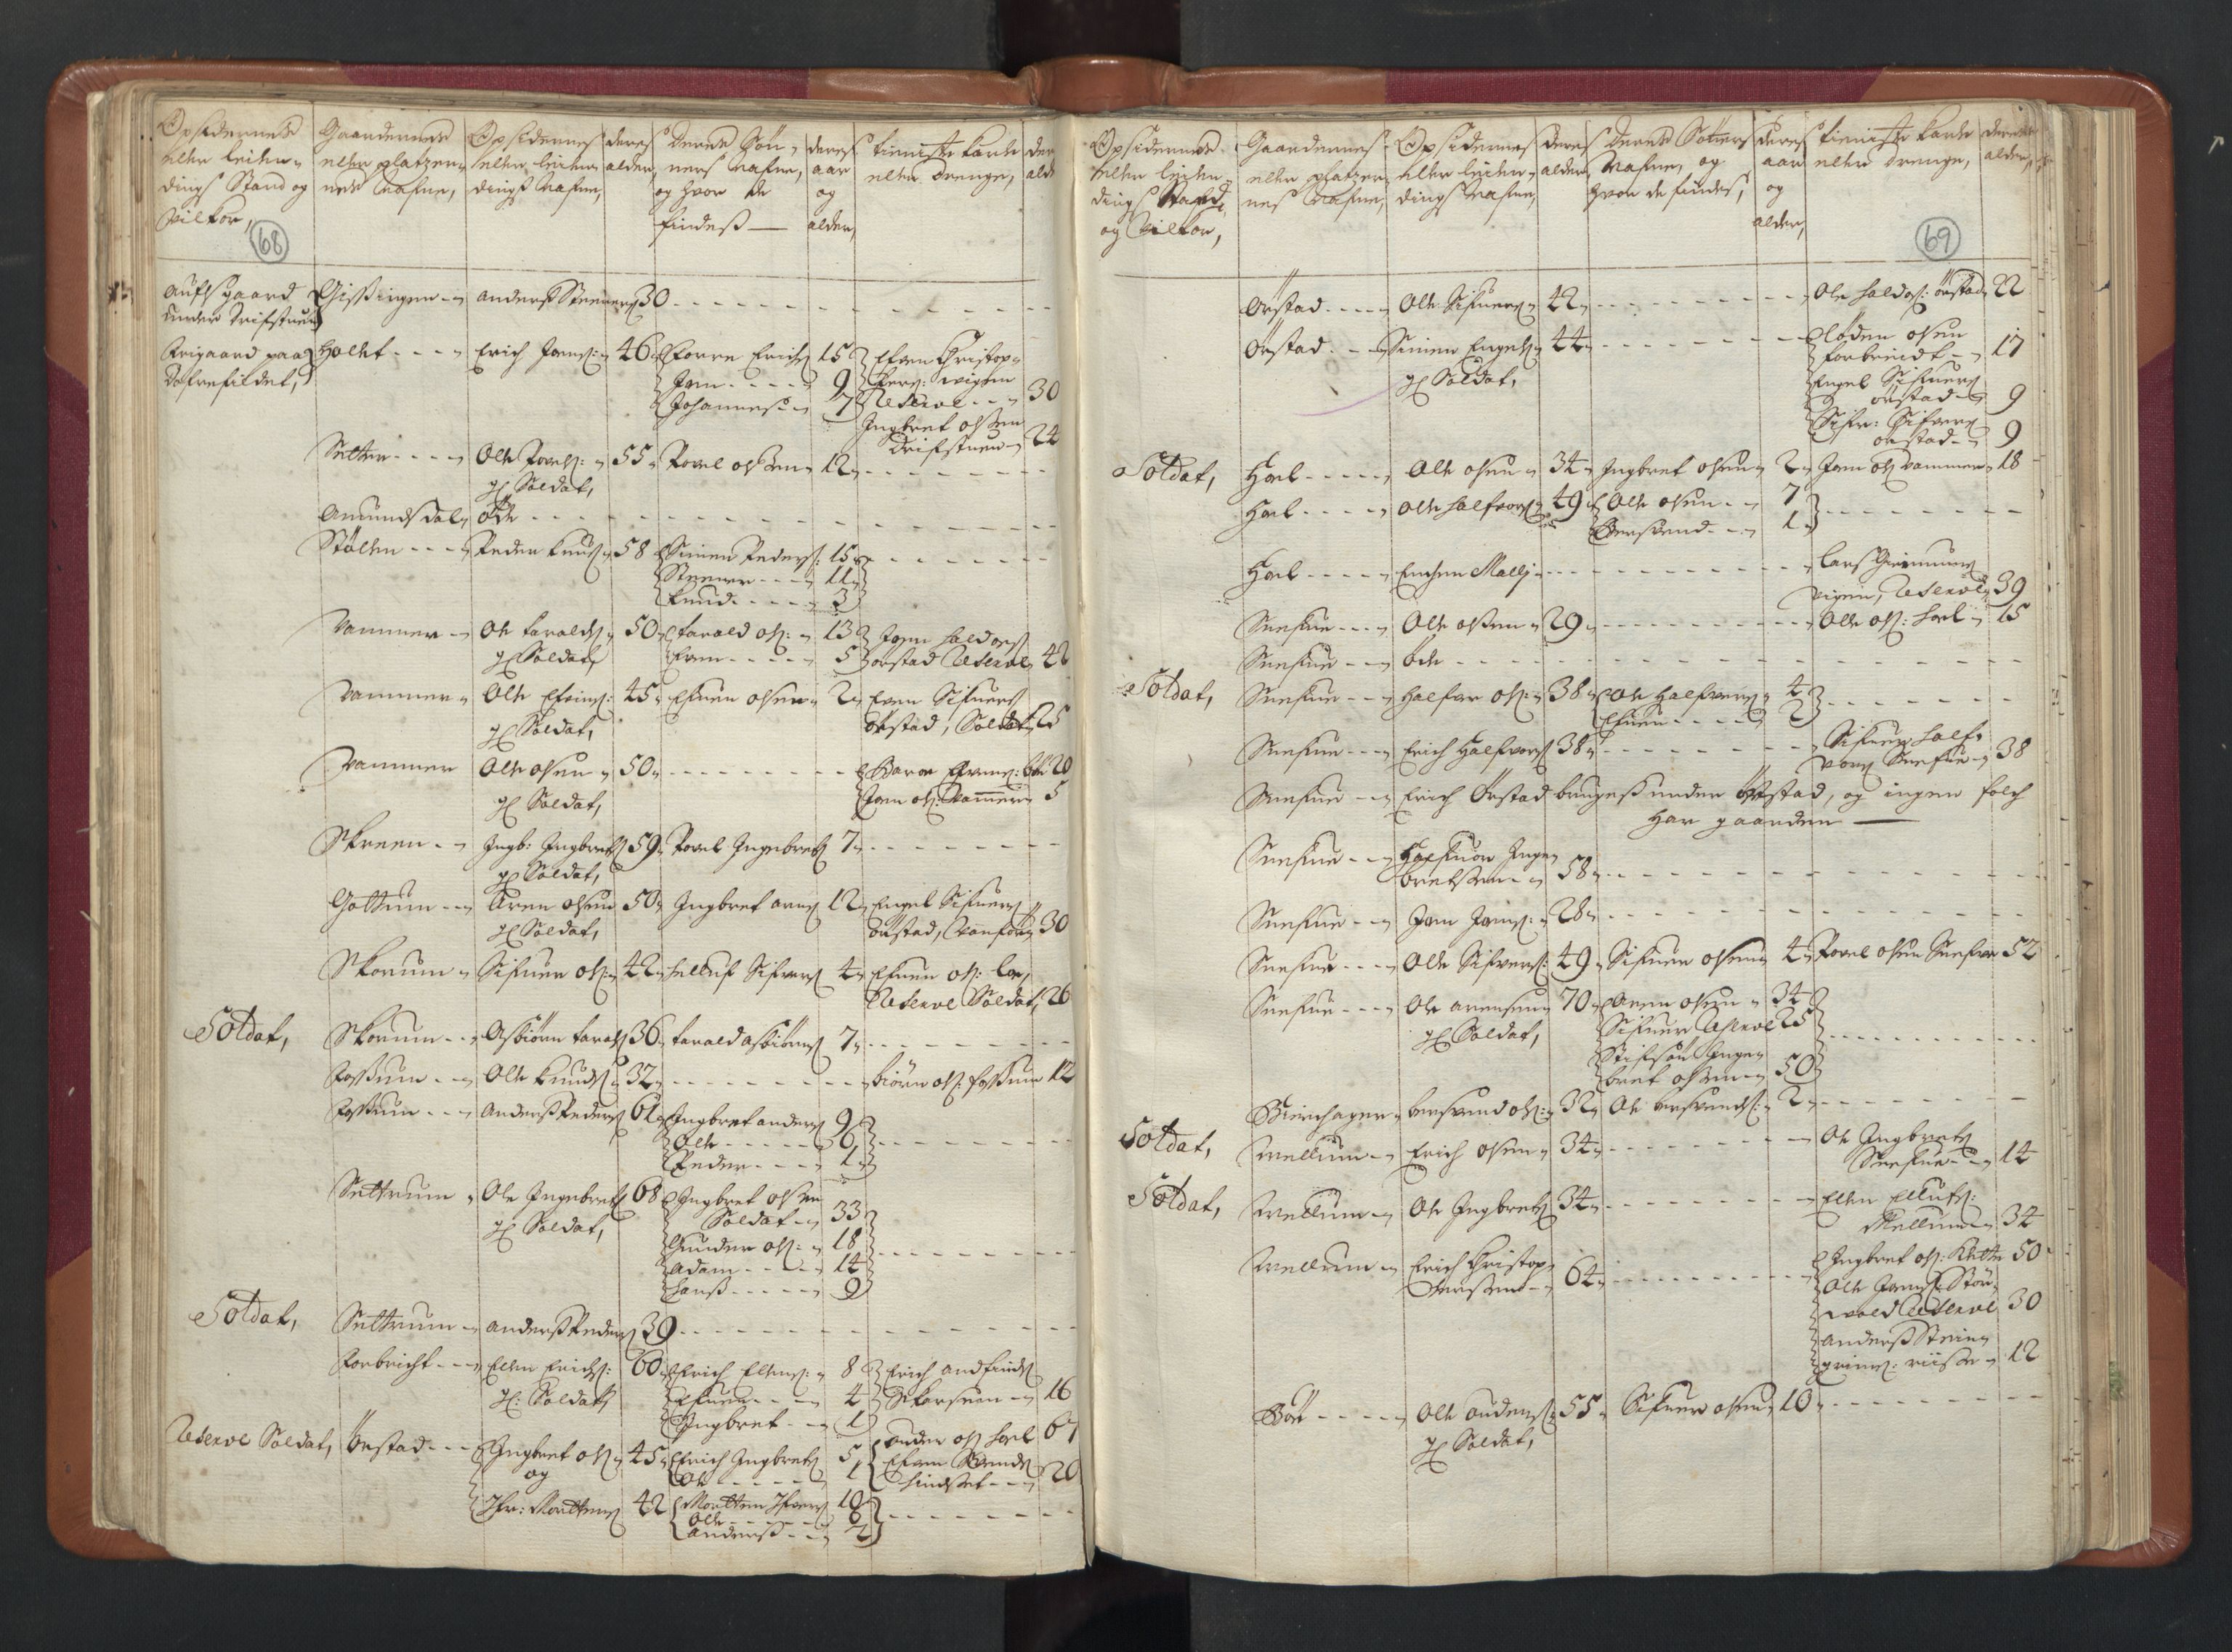 RA, Manntallet 1701, nr. 13: Orkdal fogderi og Gauldal fogderi med Røros kobberverk, 1701, s. 68-69